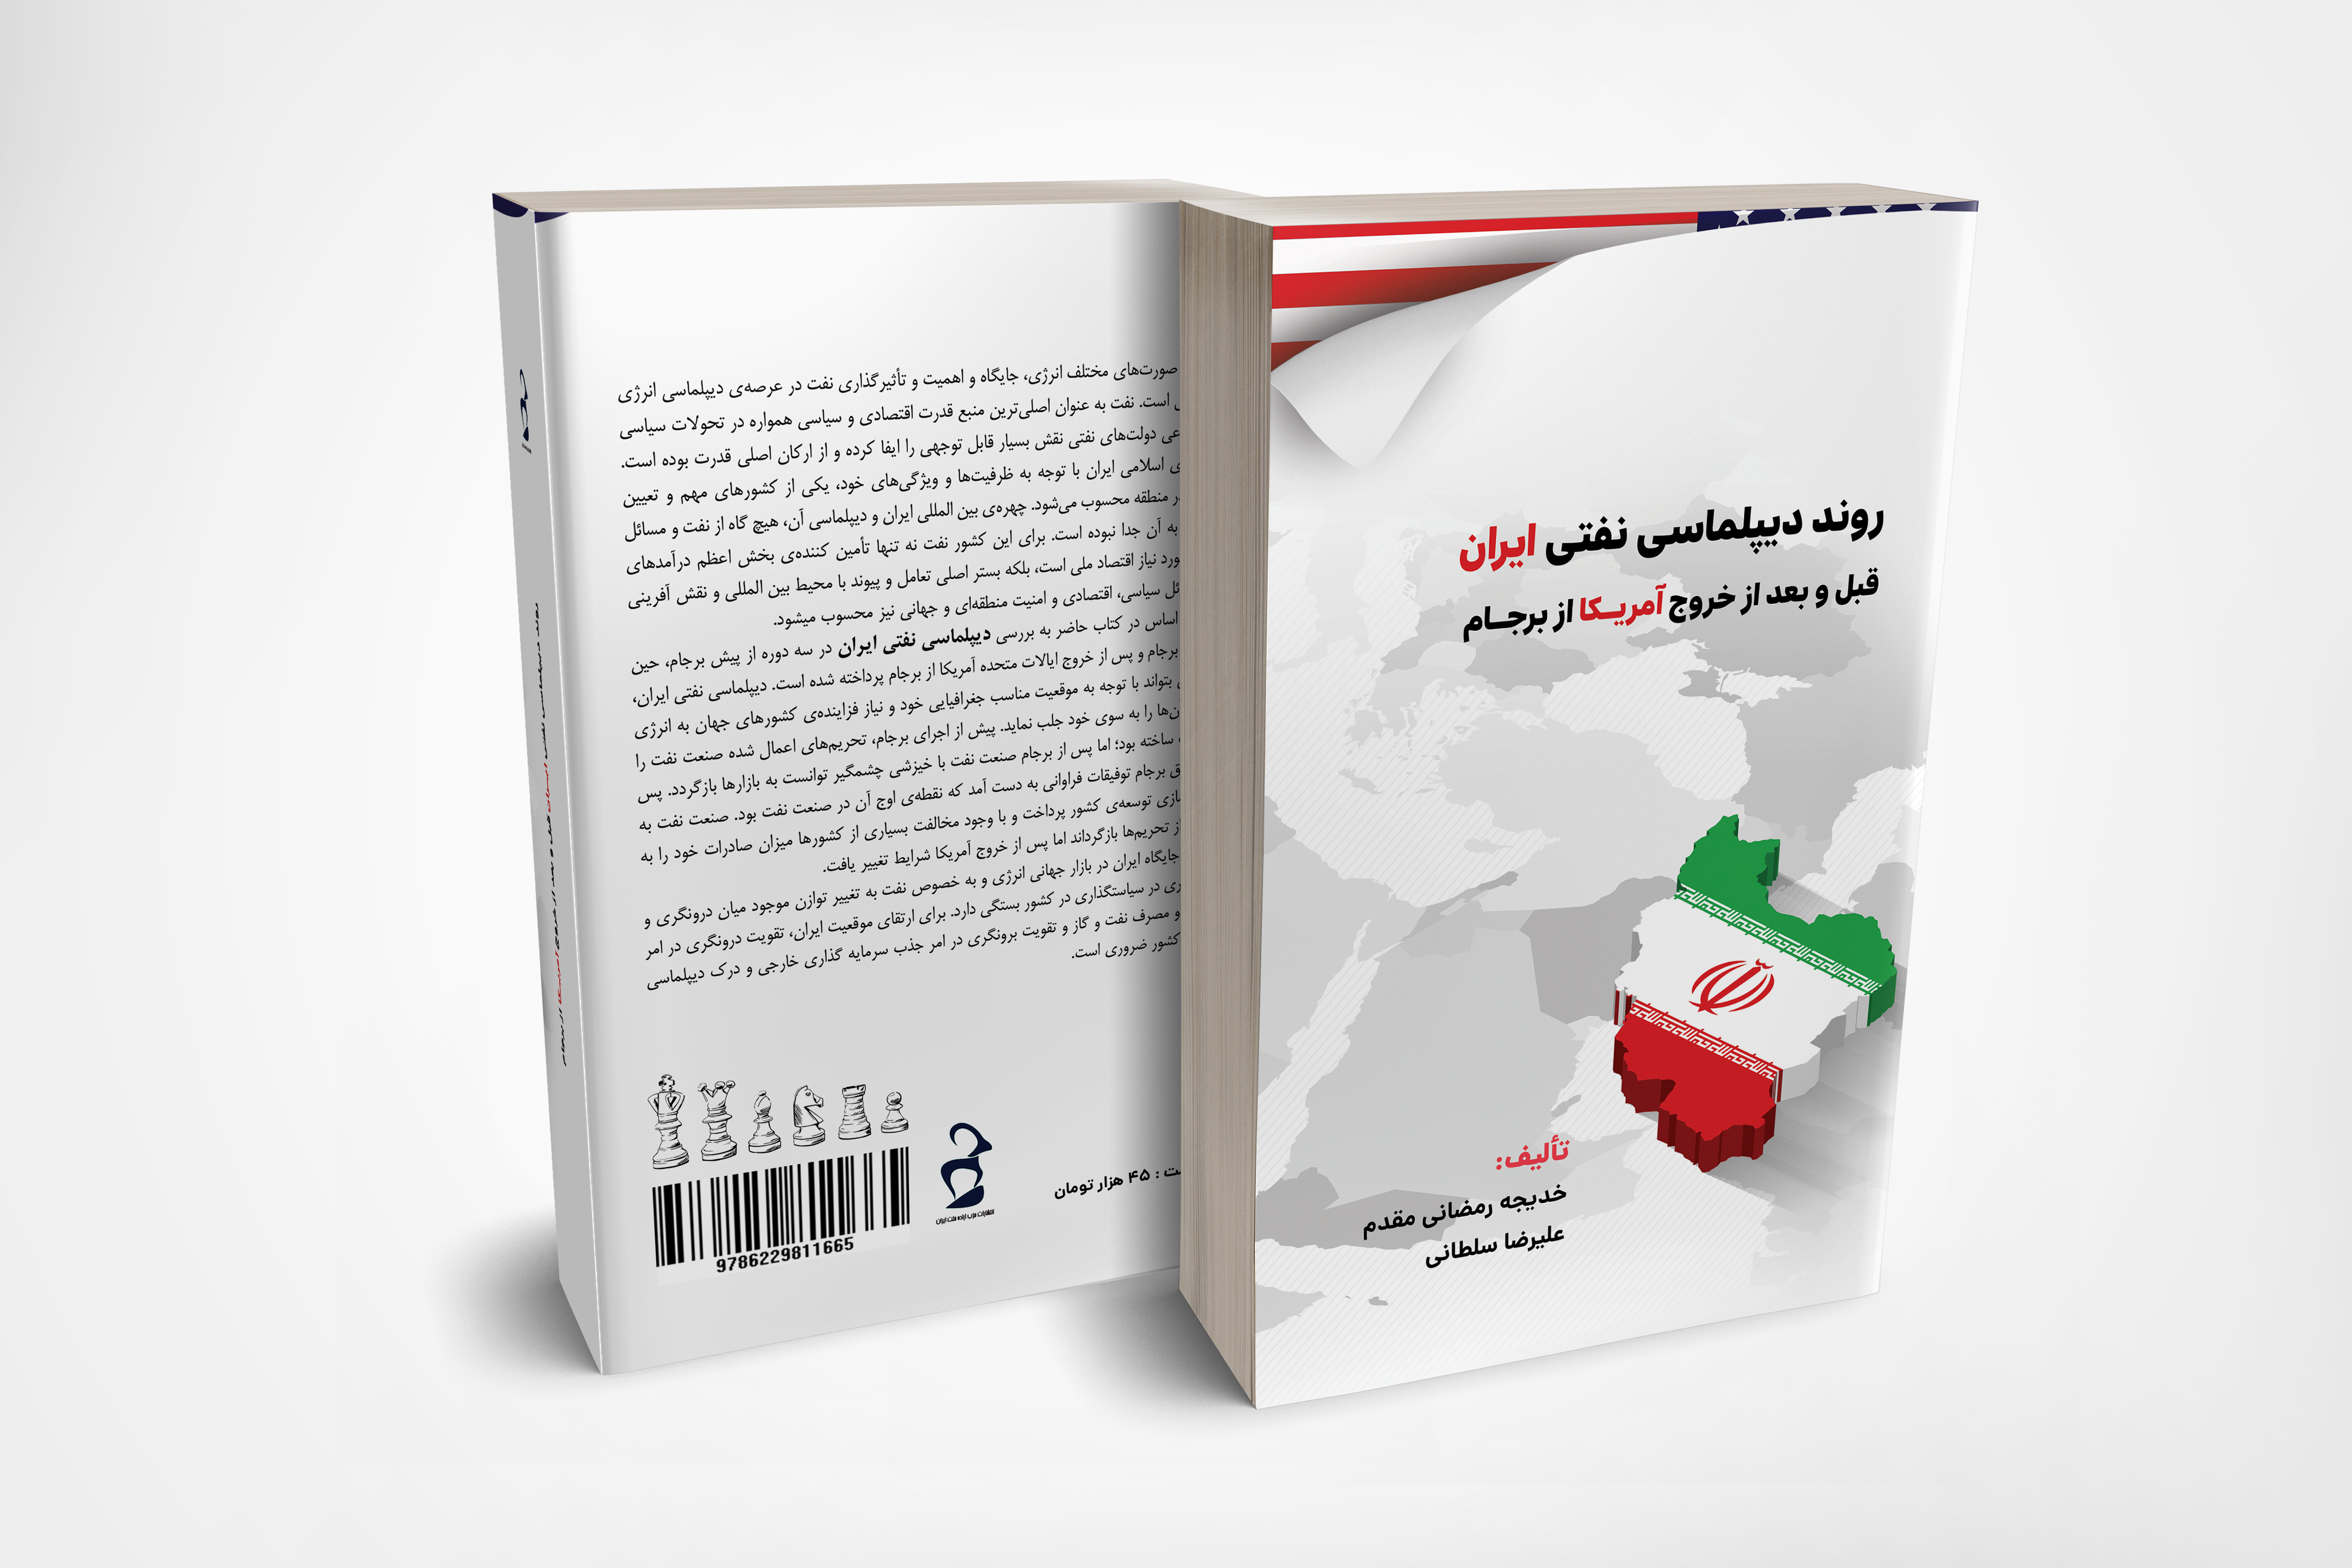 دو کتاب جدید انتشارات راهی چاپخانه شد/روند دیپلماسی نفتی ایران و نقش شورا در توسعه سیاسی چاپ می شود